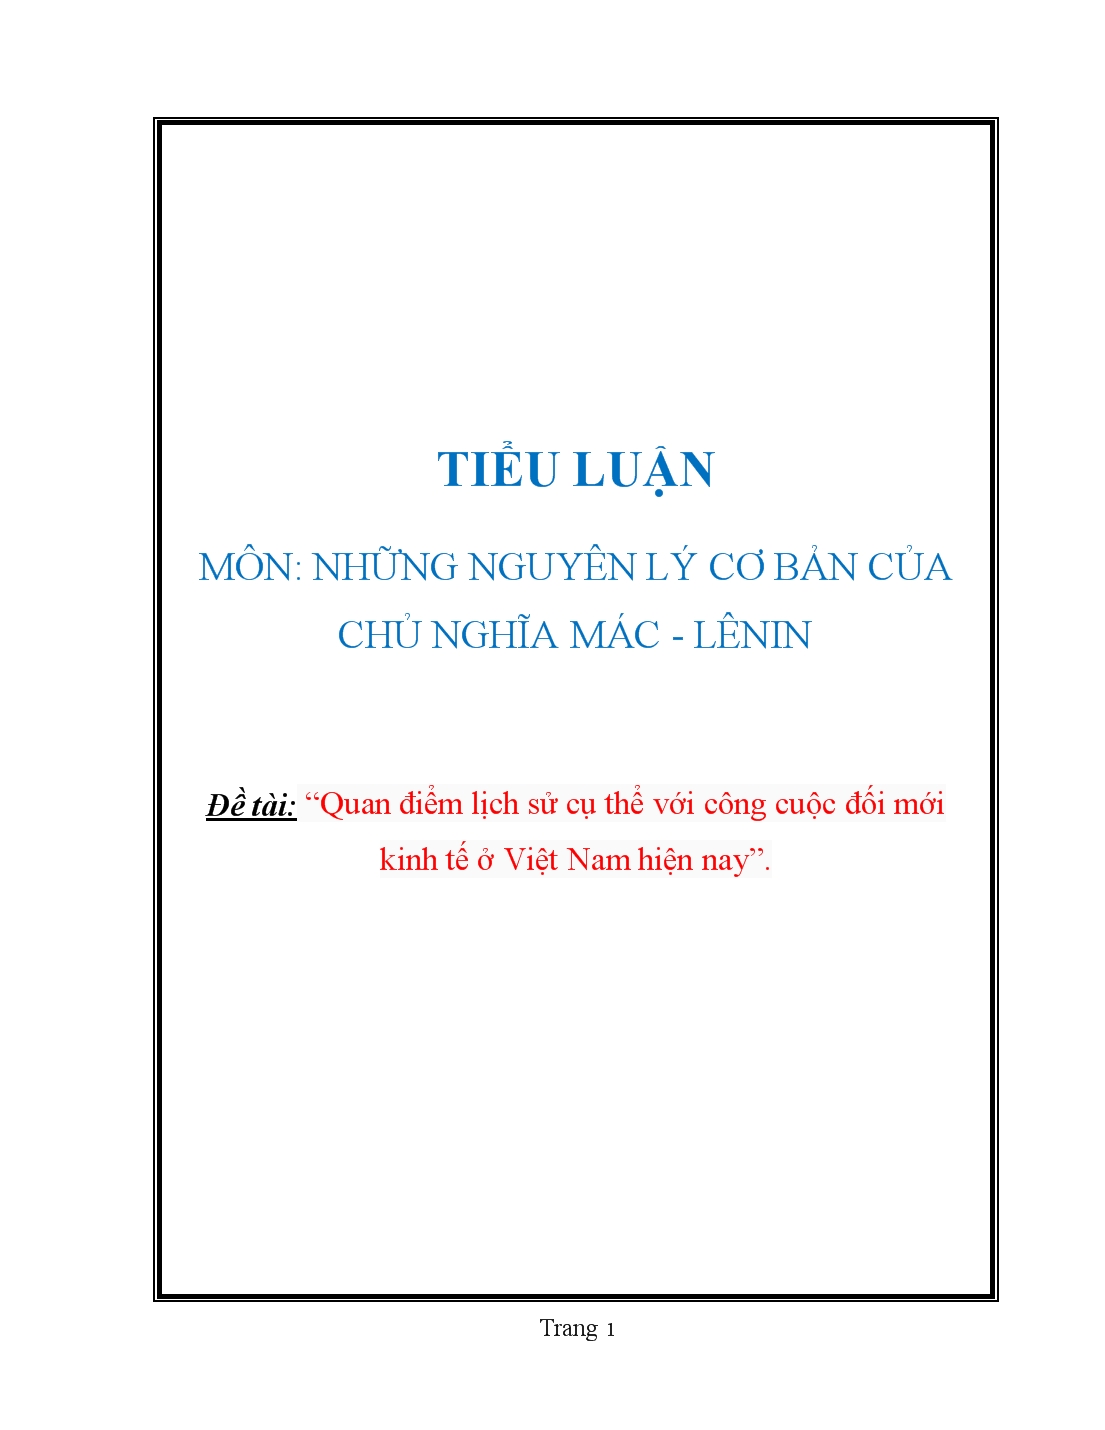 Tiểu luận Quan điểm lịch sử cụ thể với công cuộc đối mới kinh tế ở Việt Nam hiện nay trang 1